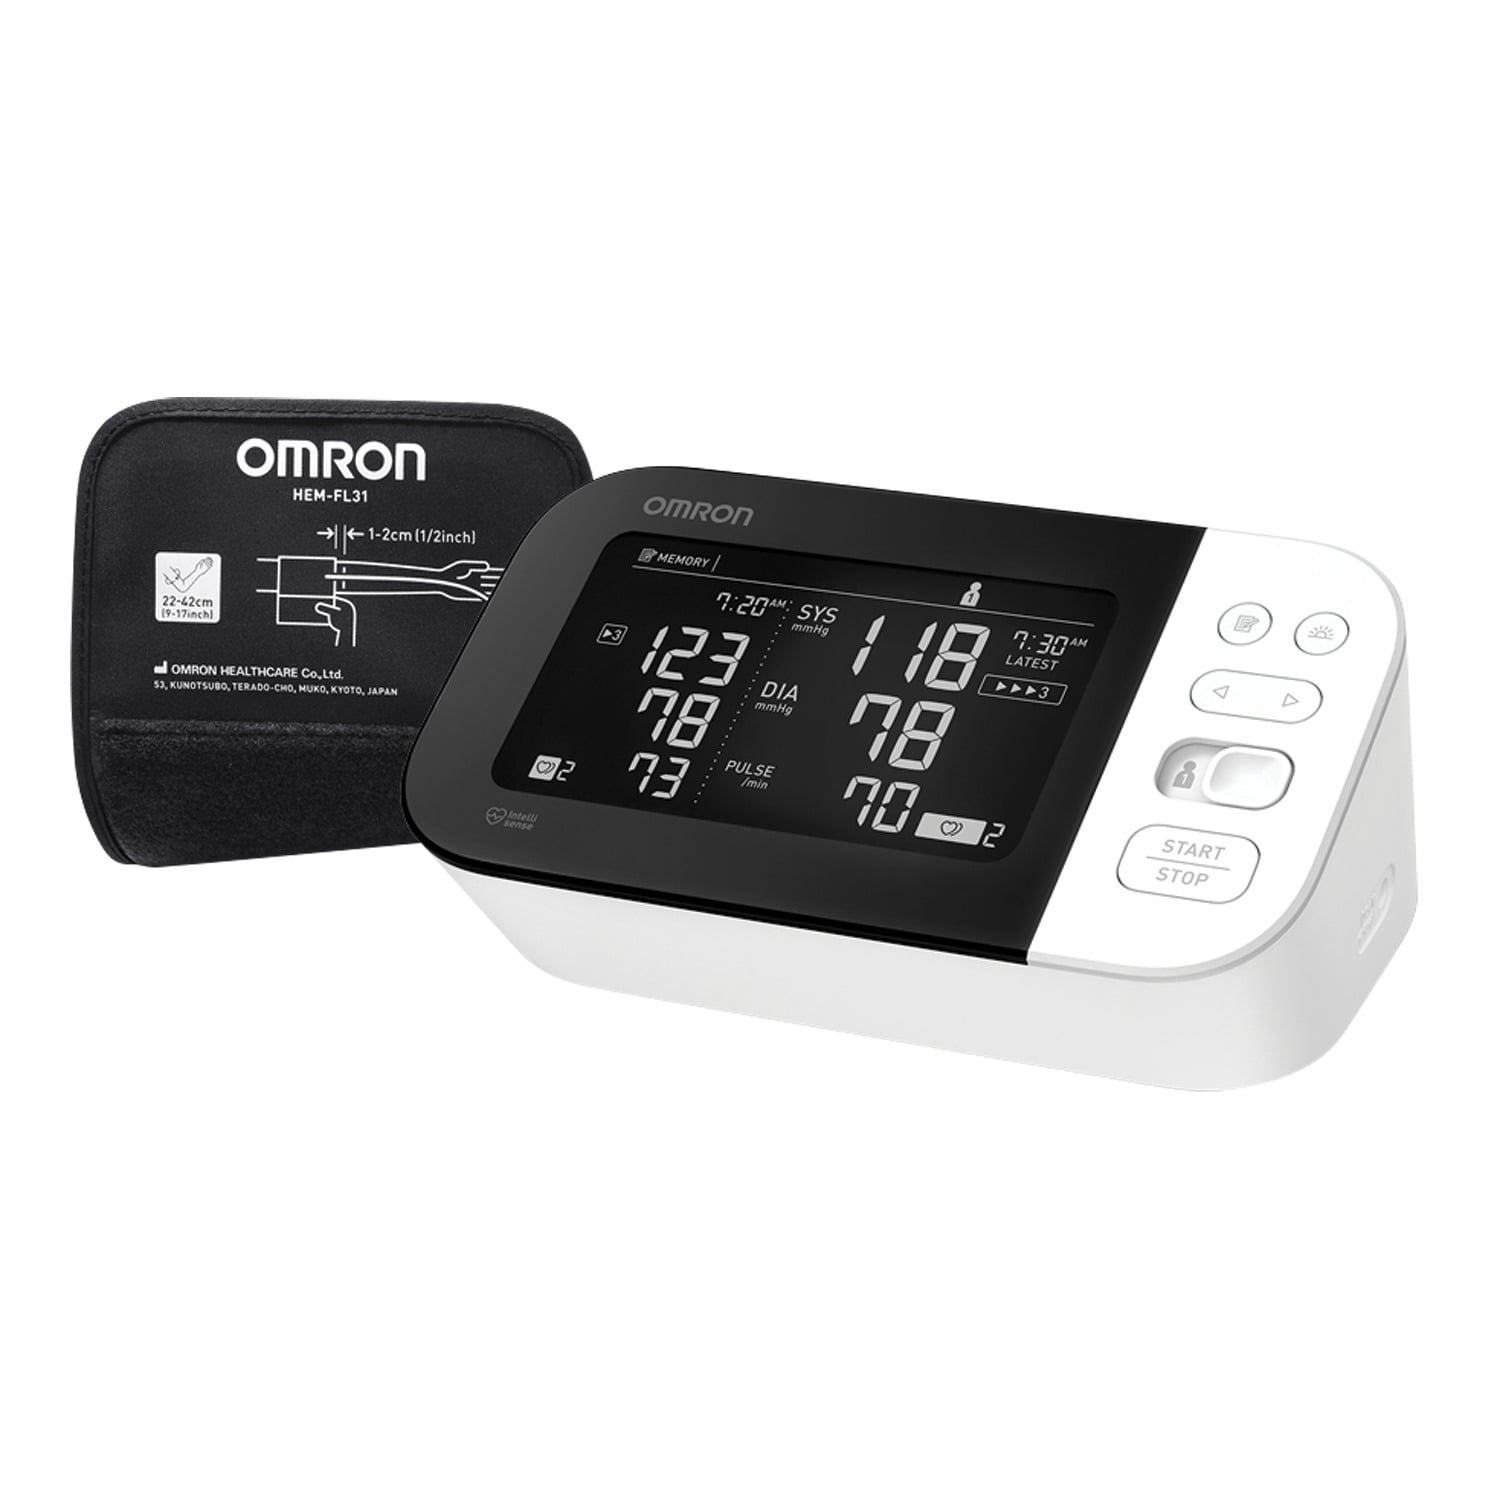 omron blood pressure 10 series